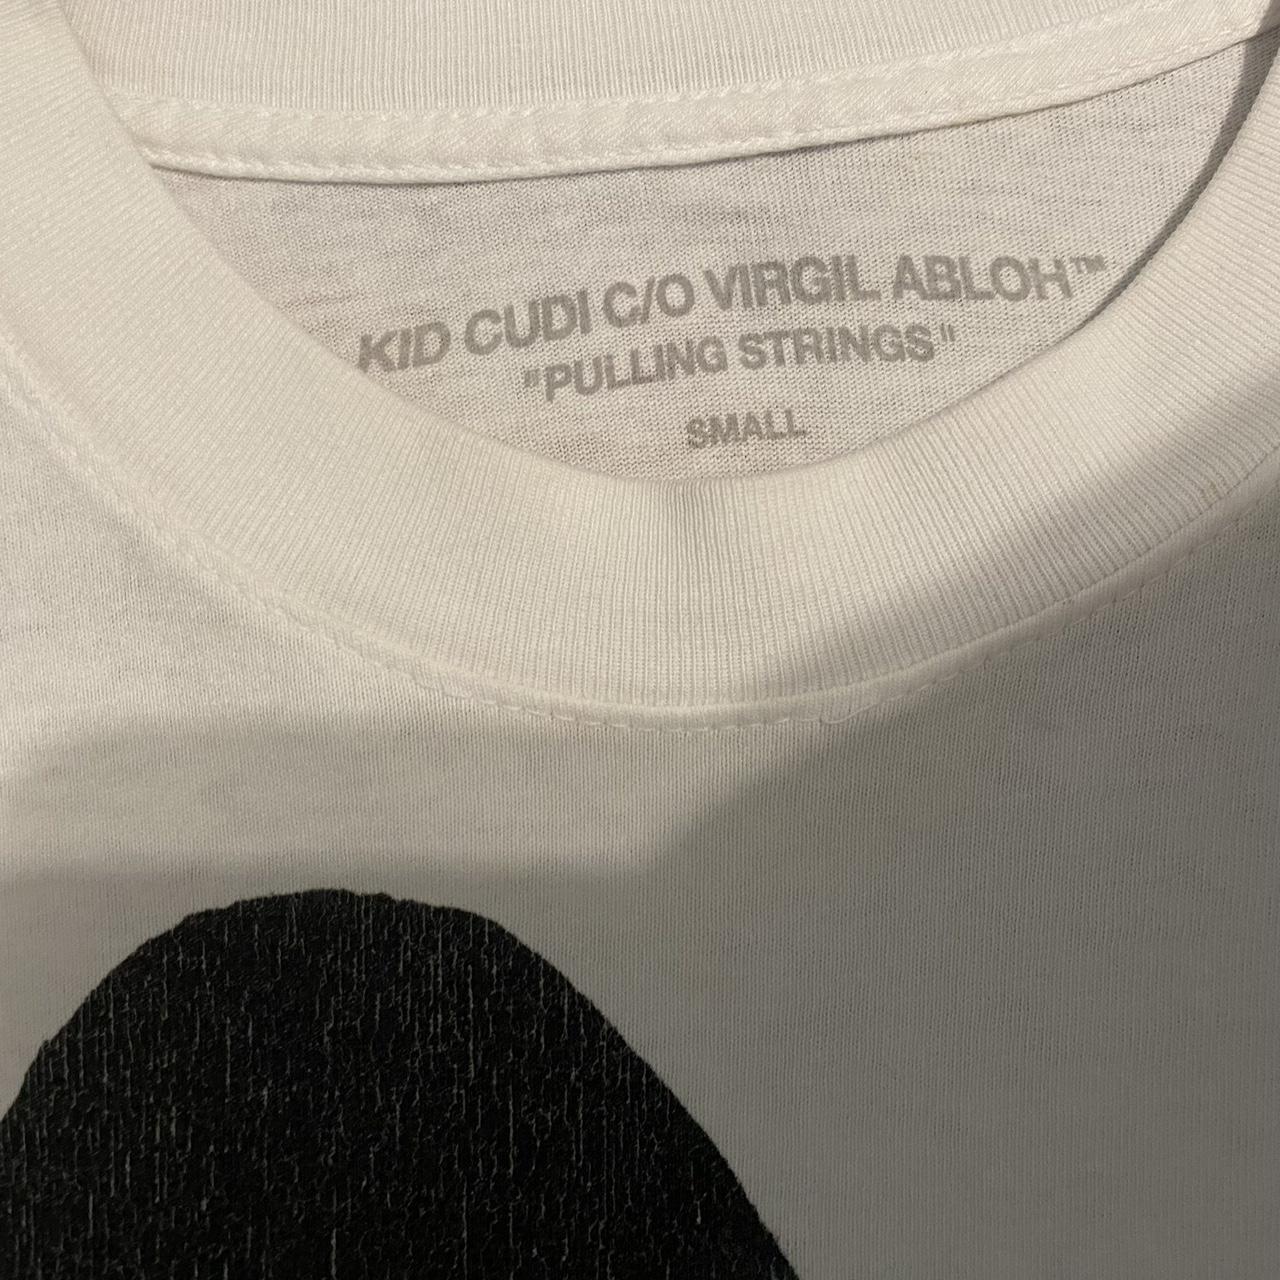 Kid Cudi C/O Virgil Abloh Pulling Strings T-Shirt White Men's - SS20 - US